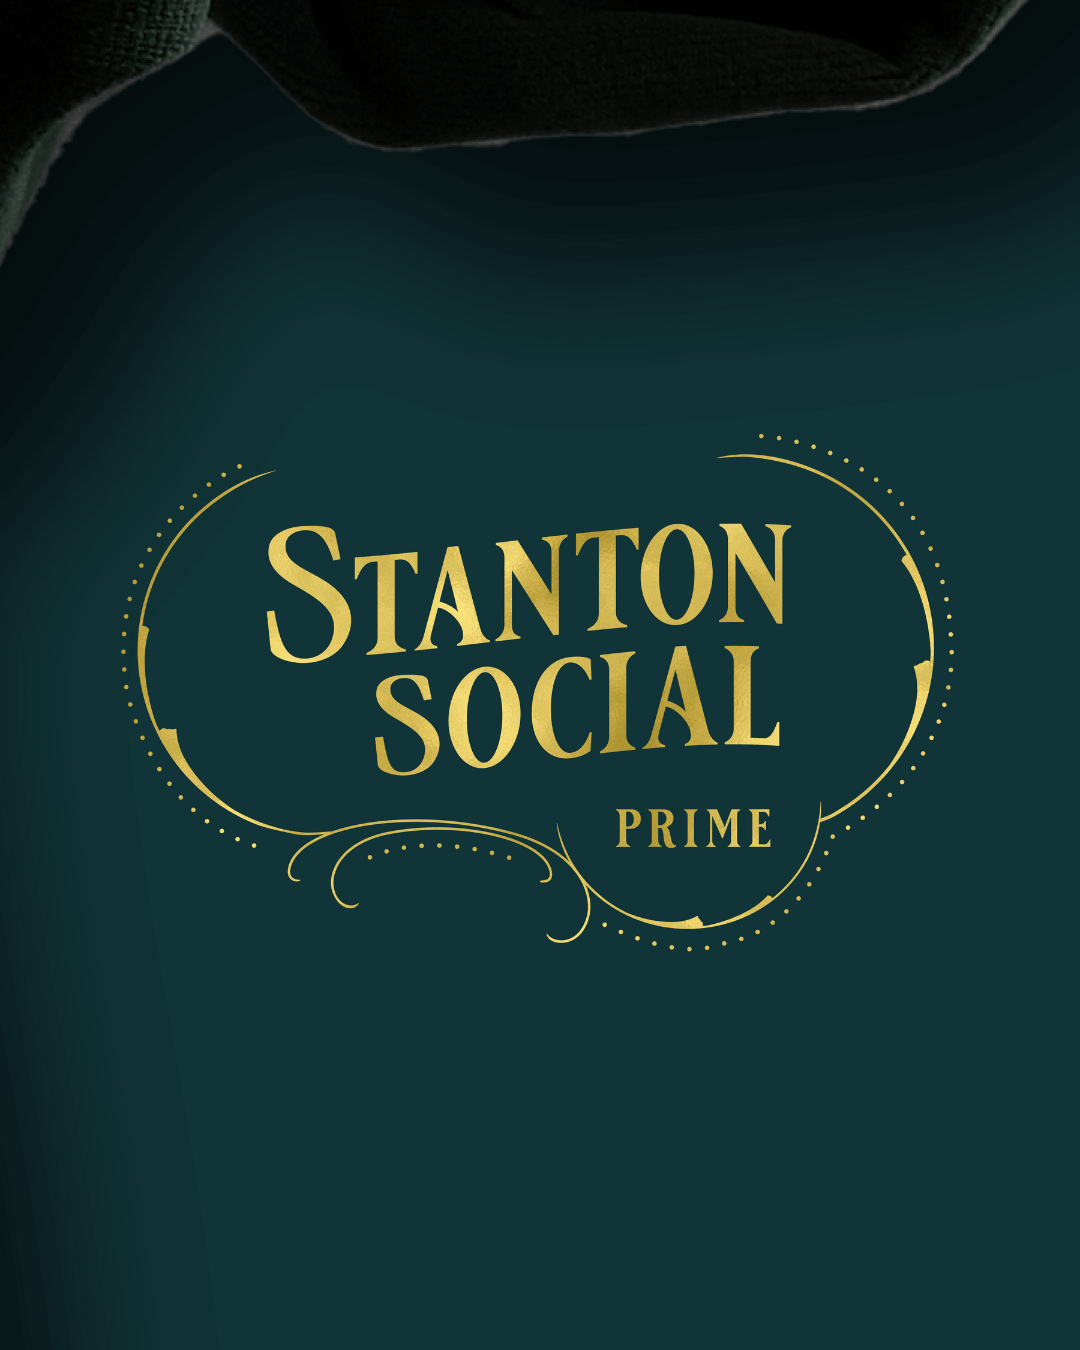 Stanton Social Prime